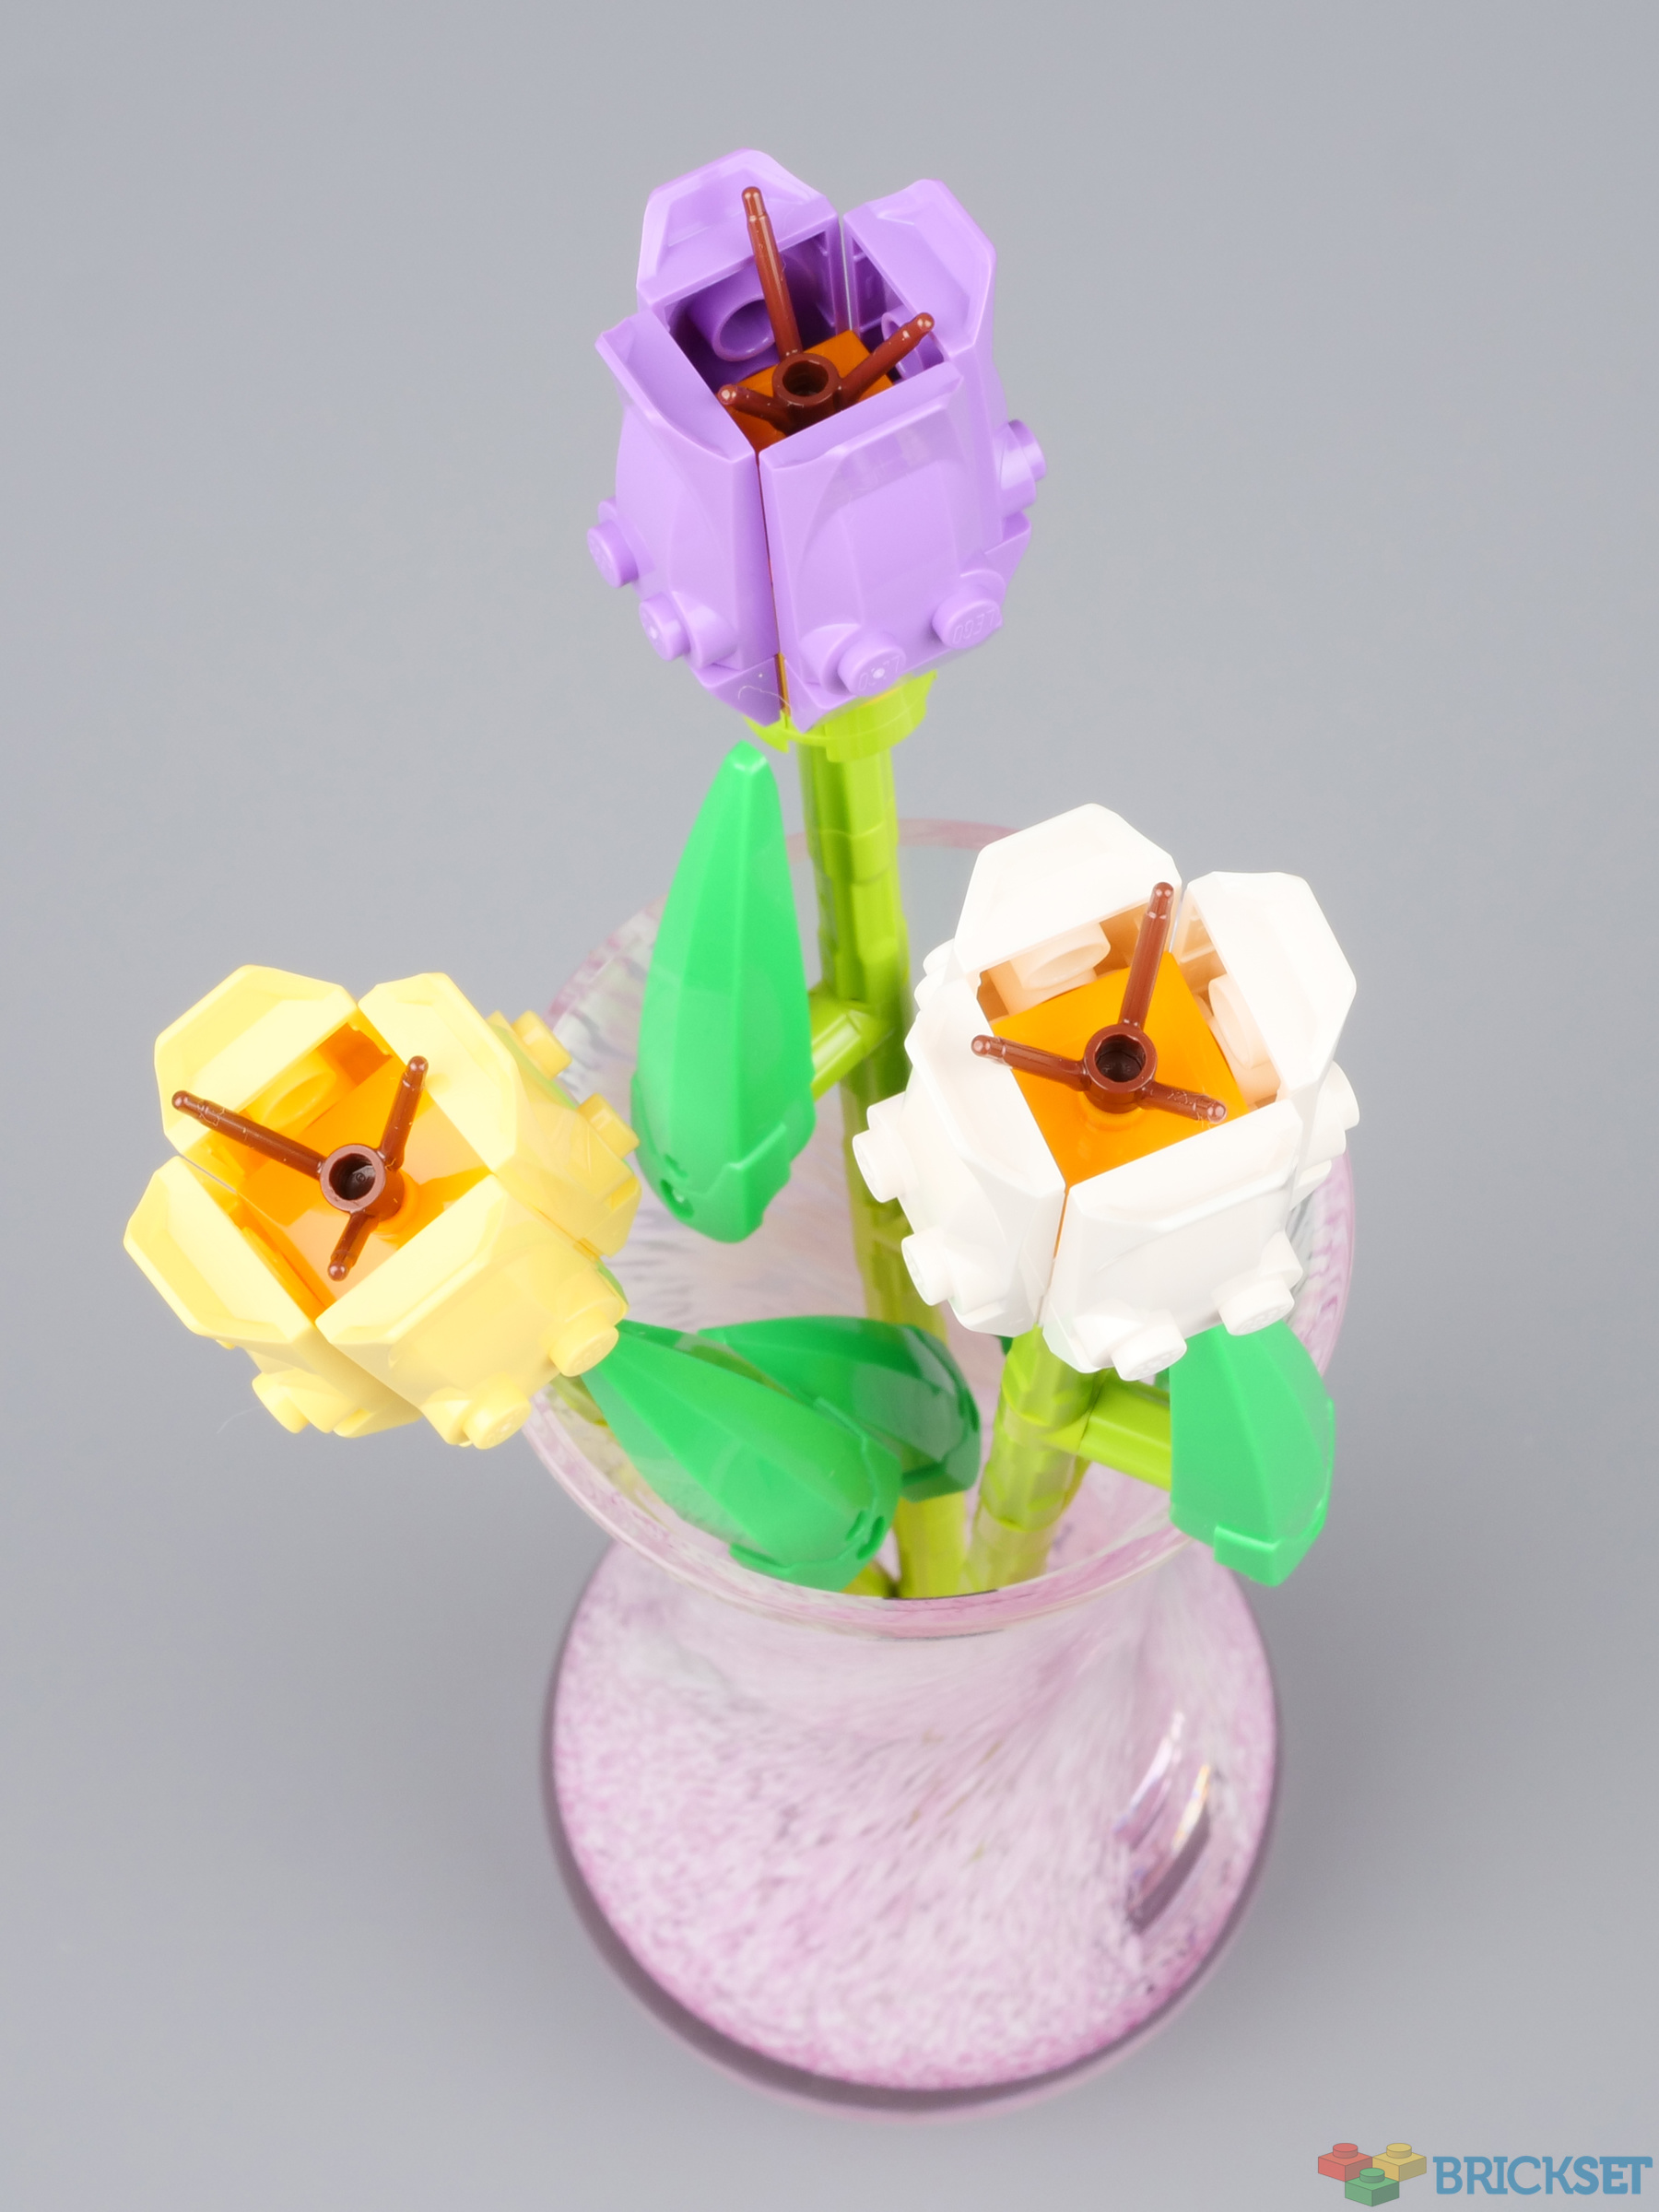 Roses & Tulips (Exclusivités LEGO - 40460 & 40461) - Mini-review -  Brickonaute